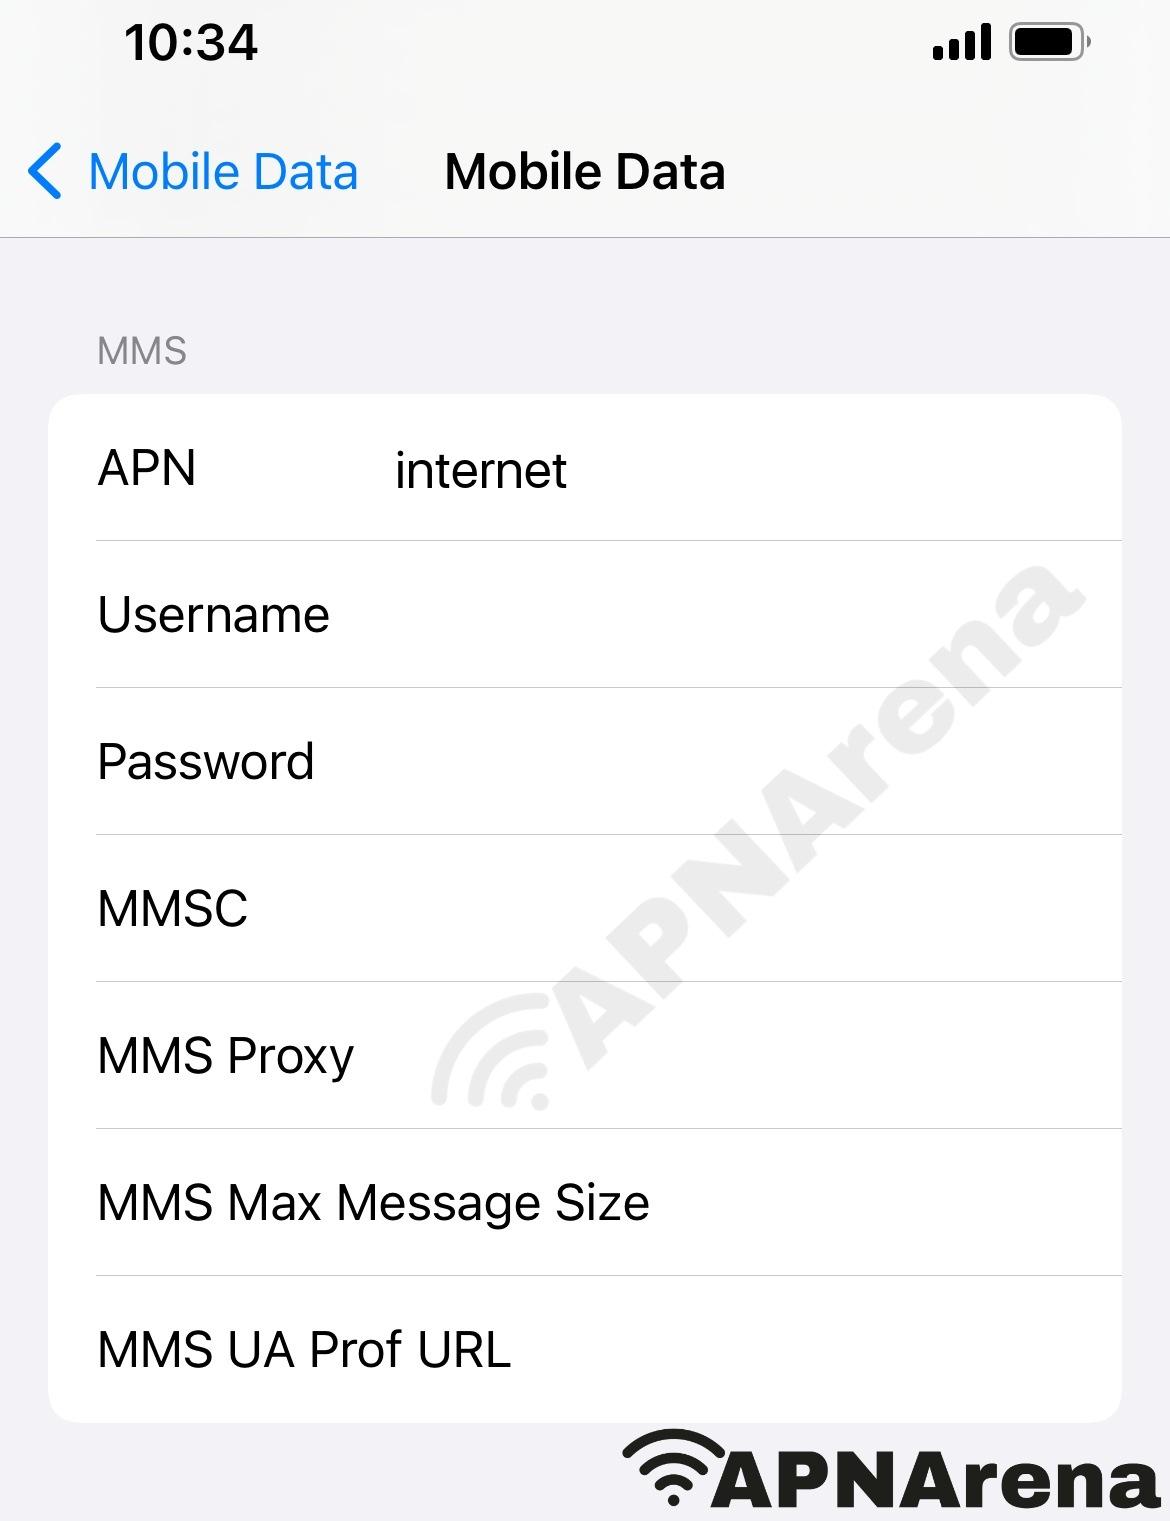 Rakuten Viber Philippines MMS Settings for iPhone